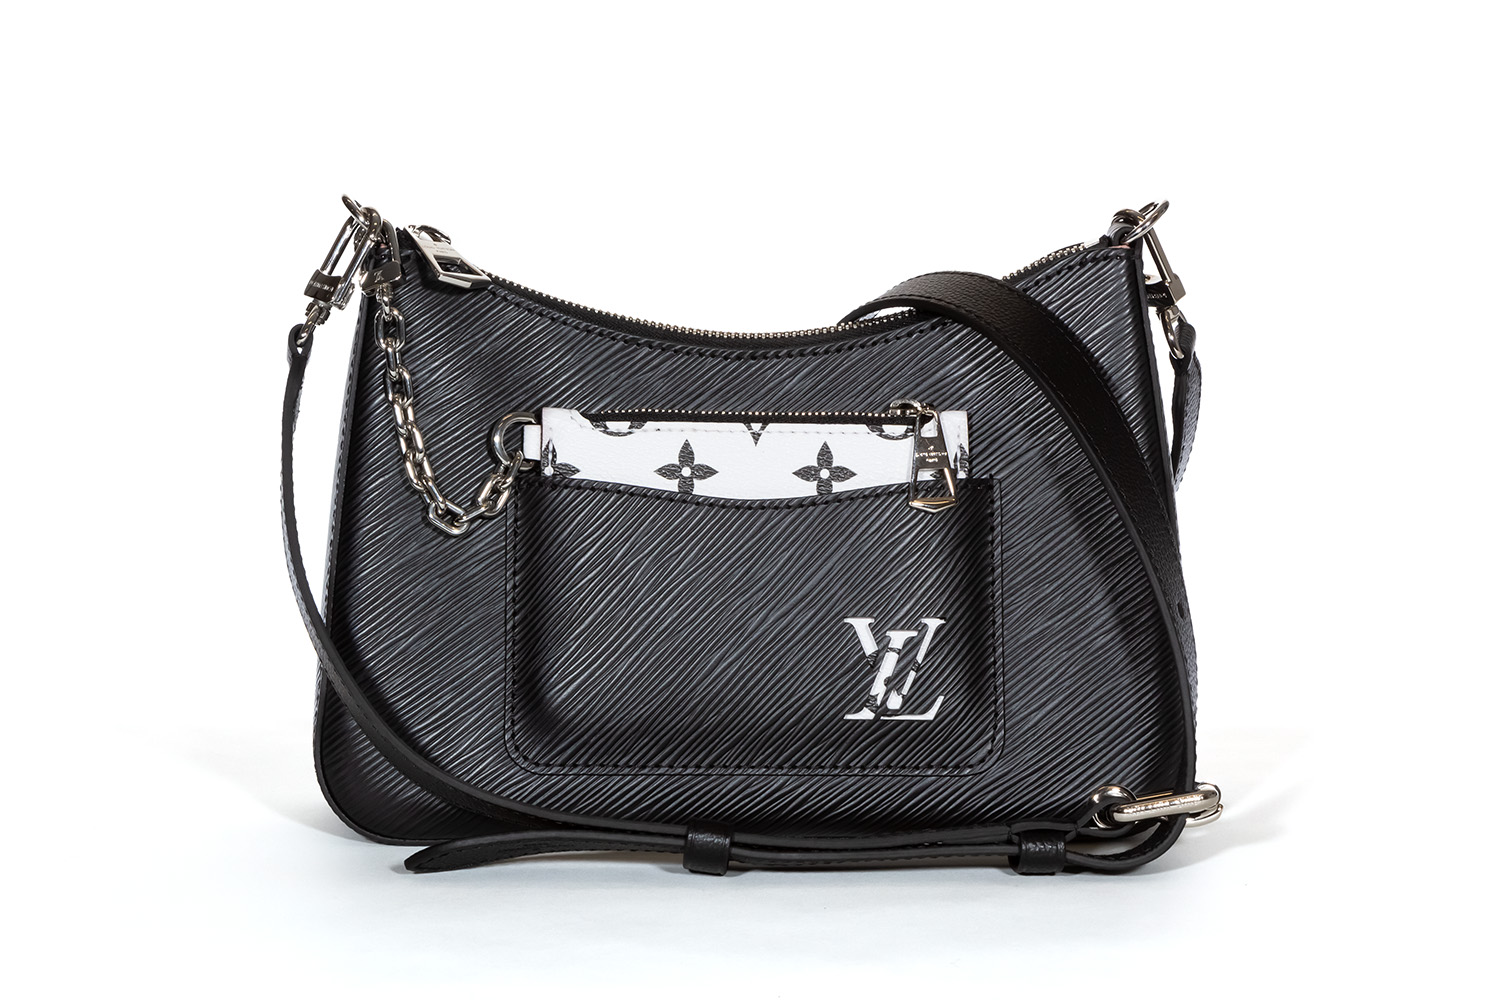 Louis Vuitton - Authenticated Marelle Handbag - Leather Black Plain For Woman, Good condition